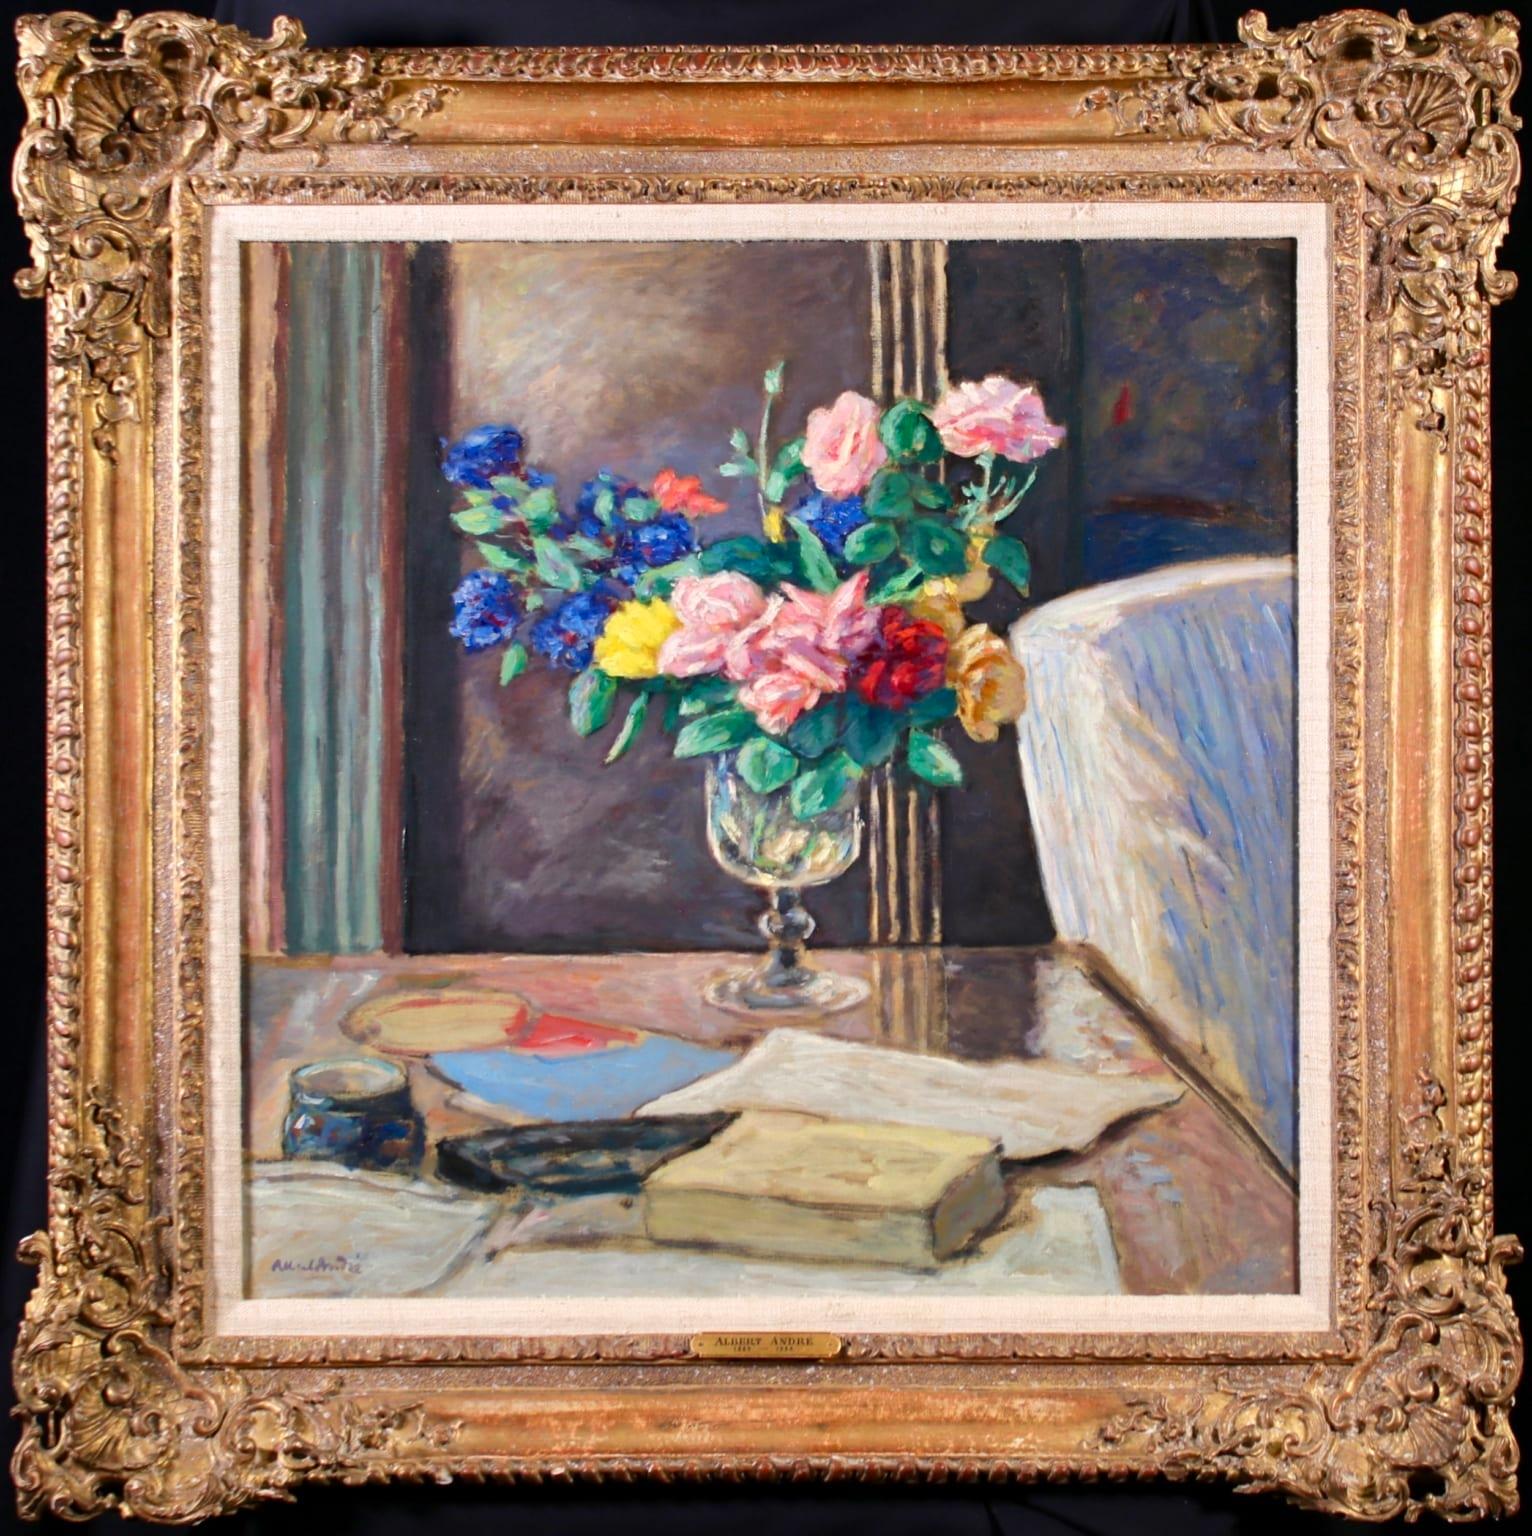 Nature morte signée et titrée, huile sur toile vers 1900 par le peintre post impressionniste français Albert André. L'œuvre représente une nature morte dans un intérieur. Un vase de roses roses, jaunes, rouges et bleues est posé sur une table à côté